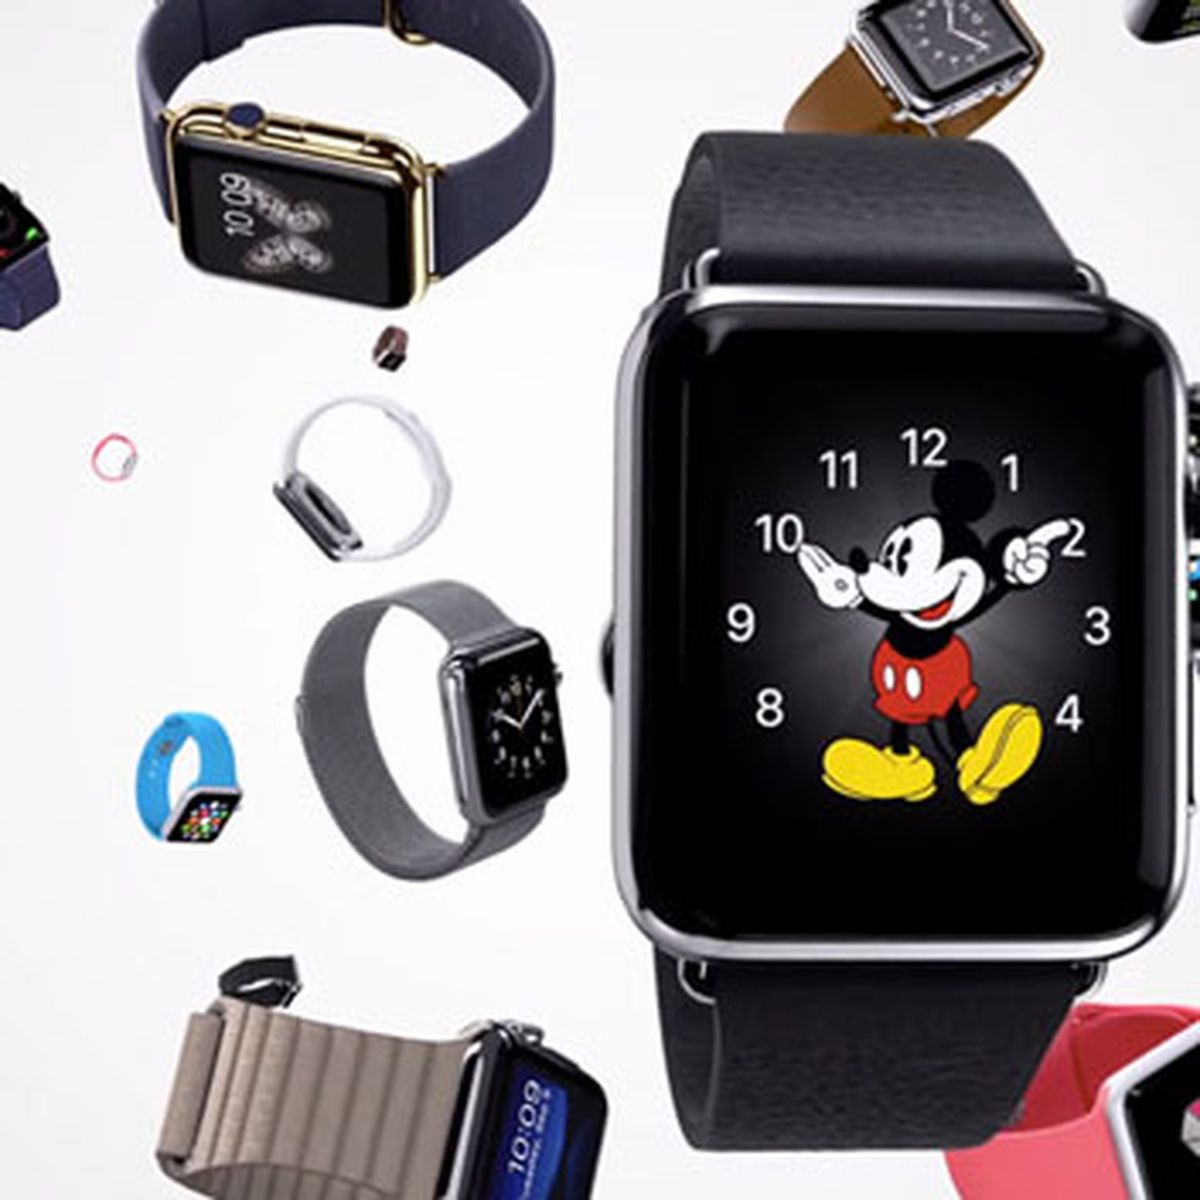 Apple pone a la venta una nueva correa para el Apple Watch: Sport